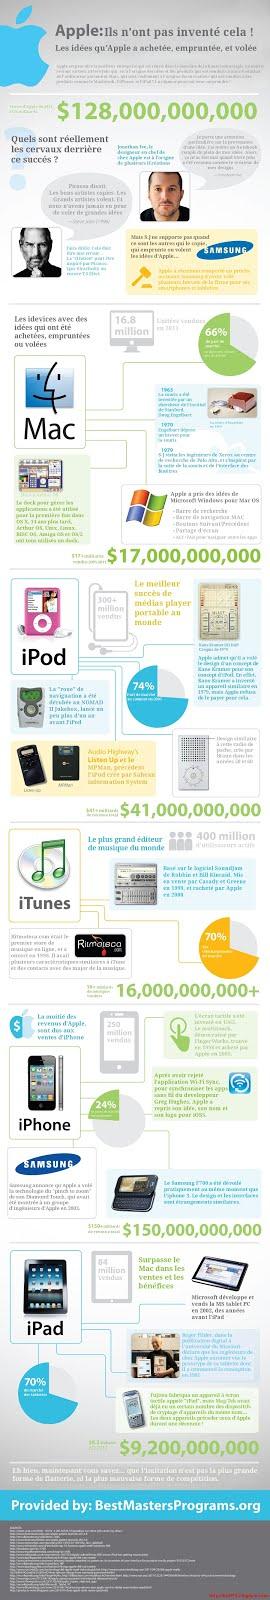 Infographie: Apple n'a pas inventé cela !!